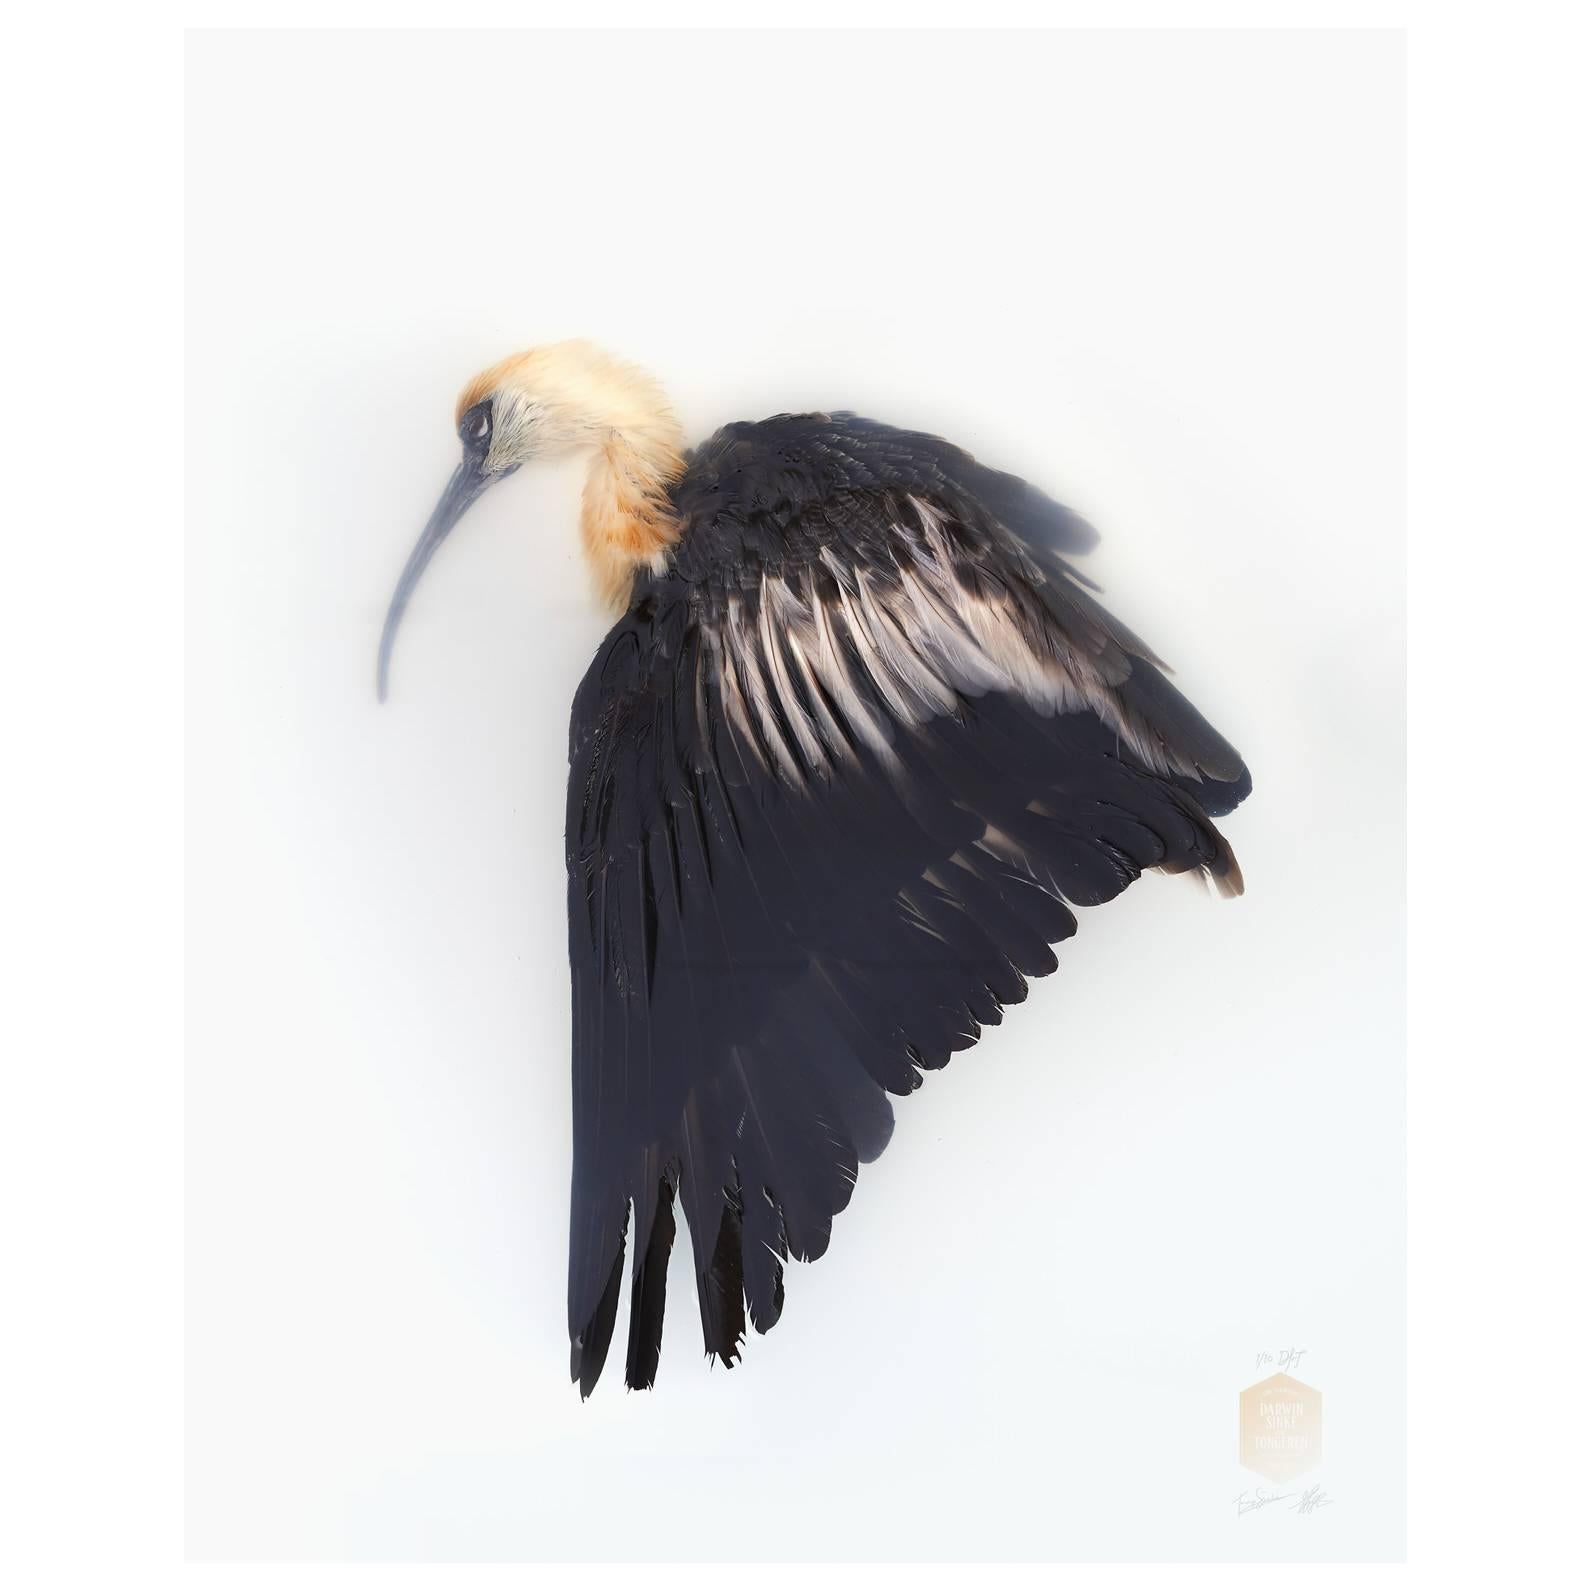 Kunstdruck mit dem Titel „Unbekannte Pose von schwarzen Gesichtern von Ibis“ von Sinke & Van Tongeren